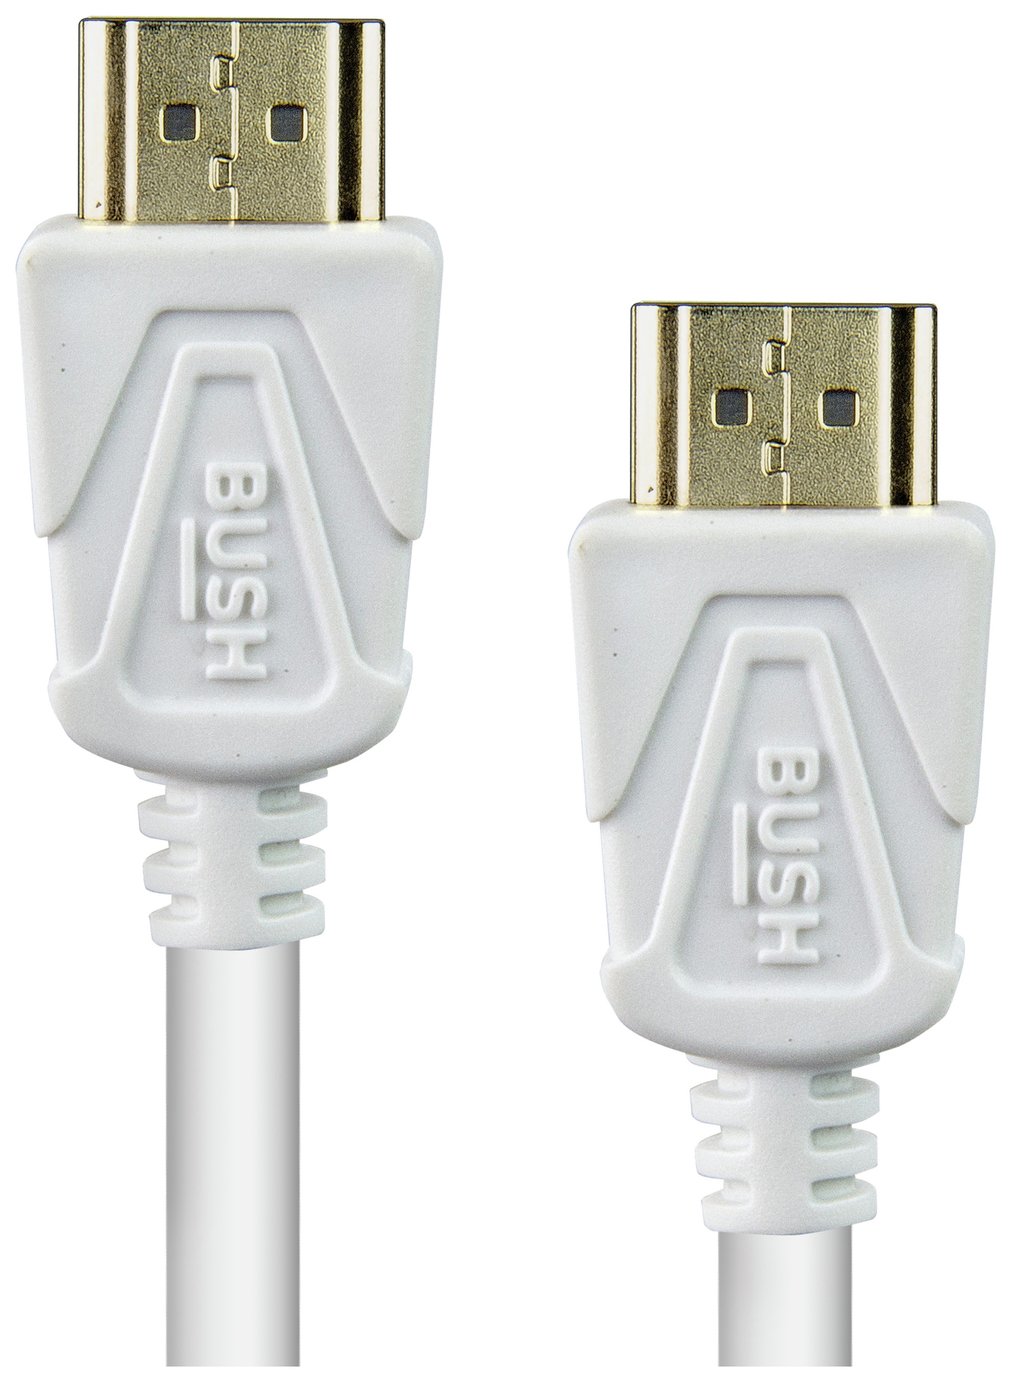 Bush HDMI Cable - 1m